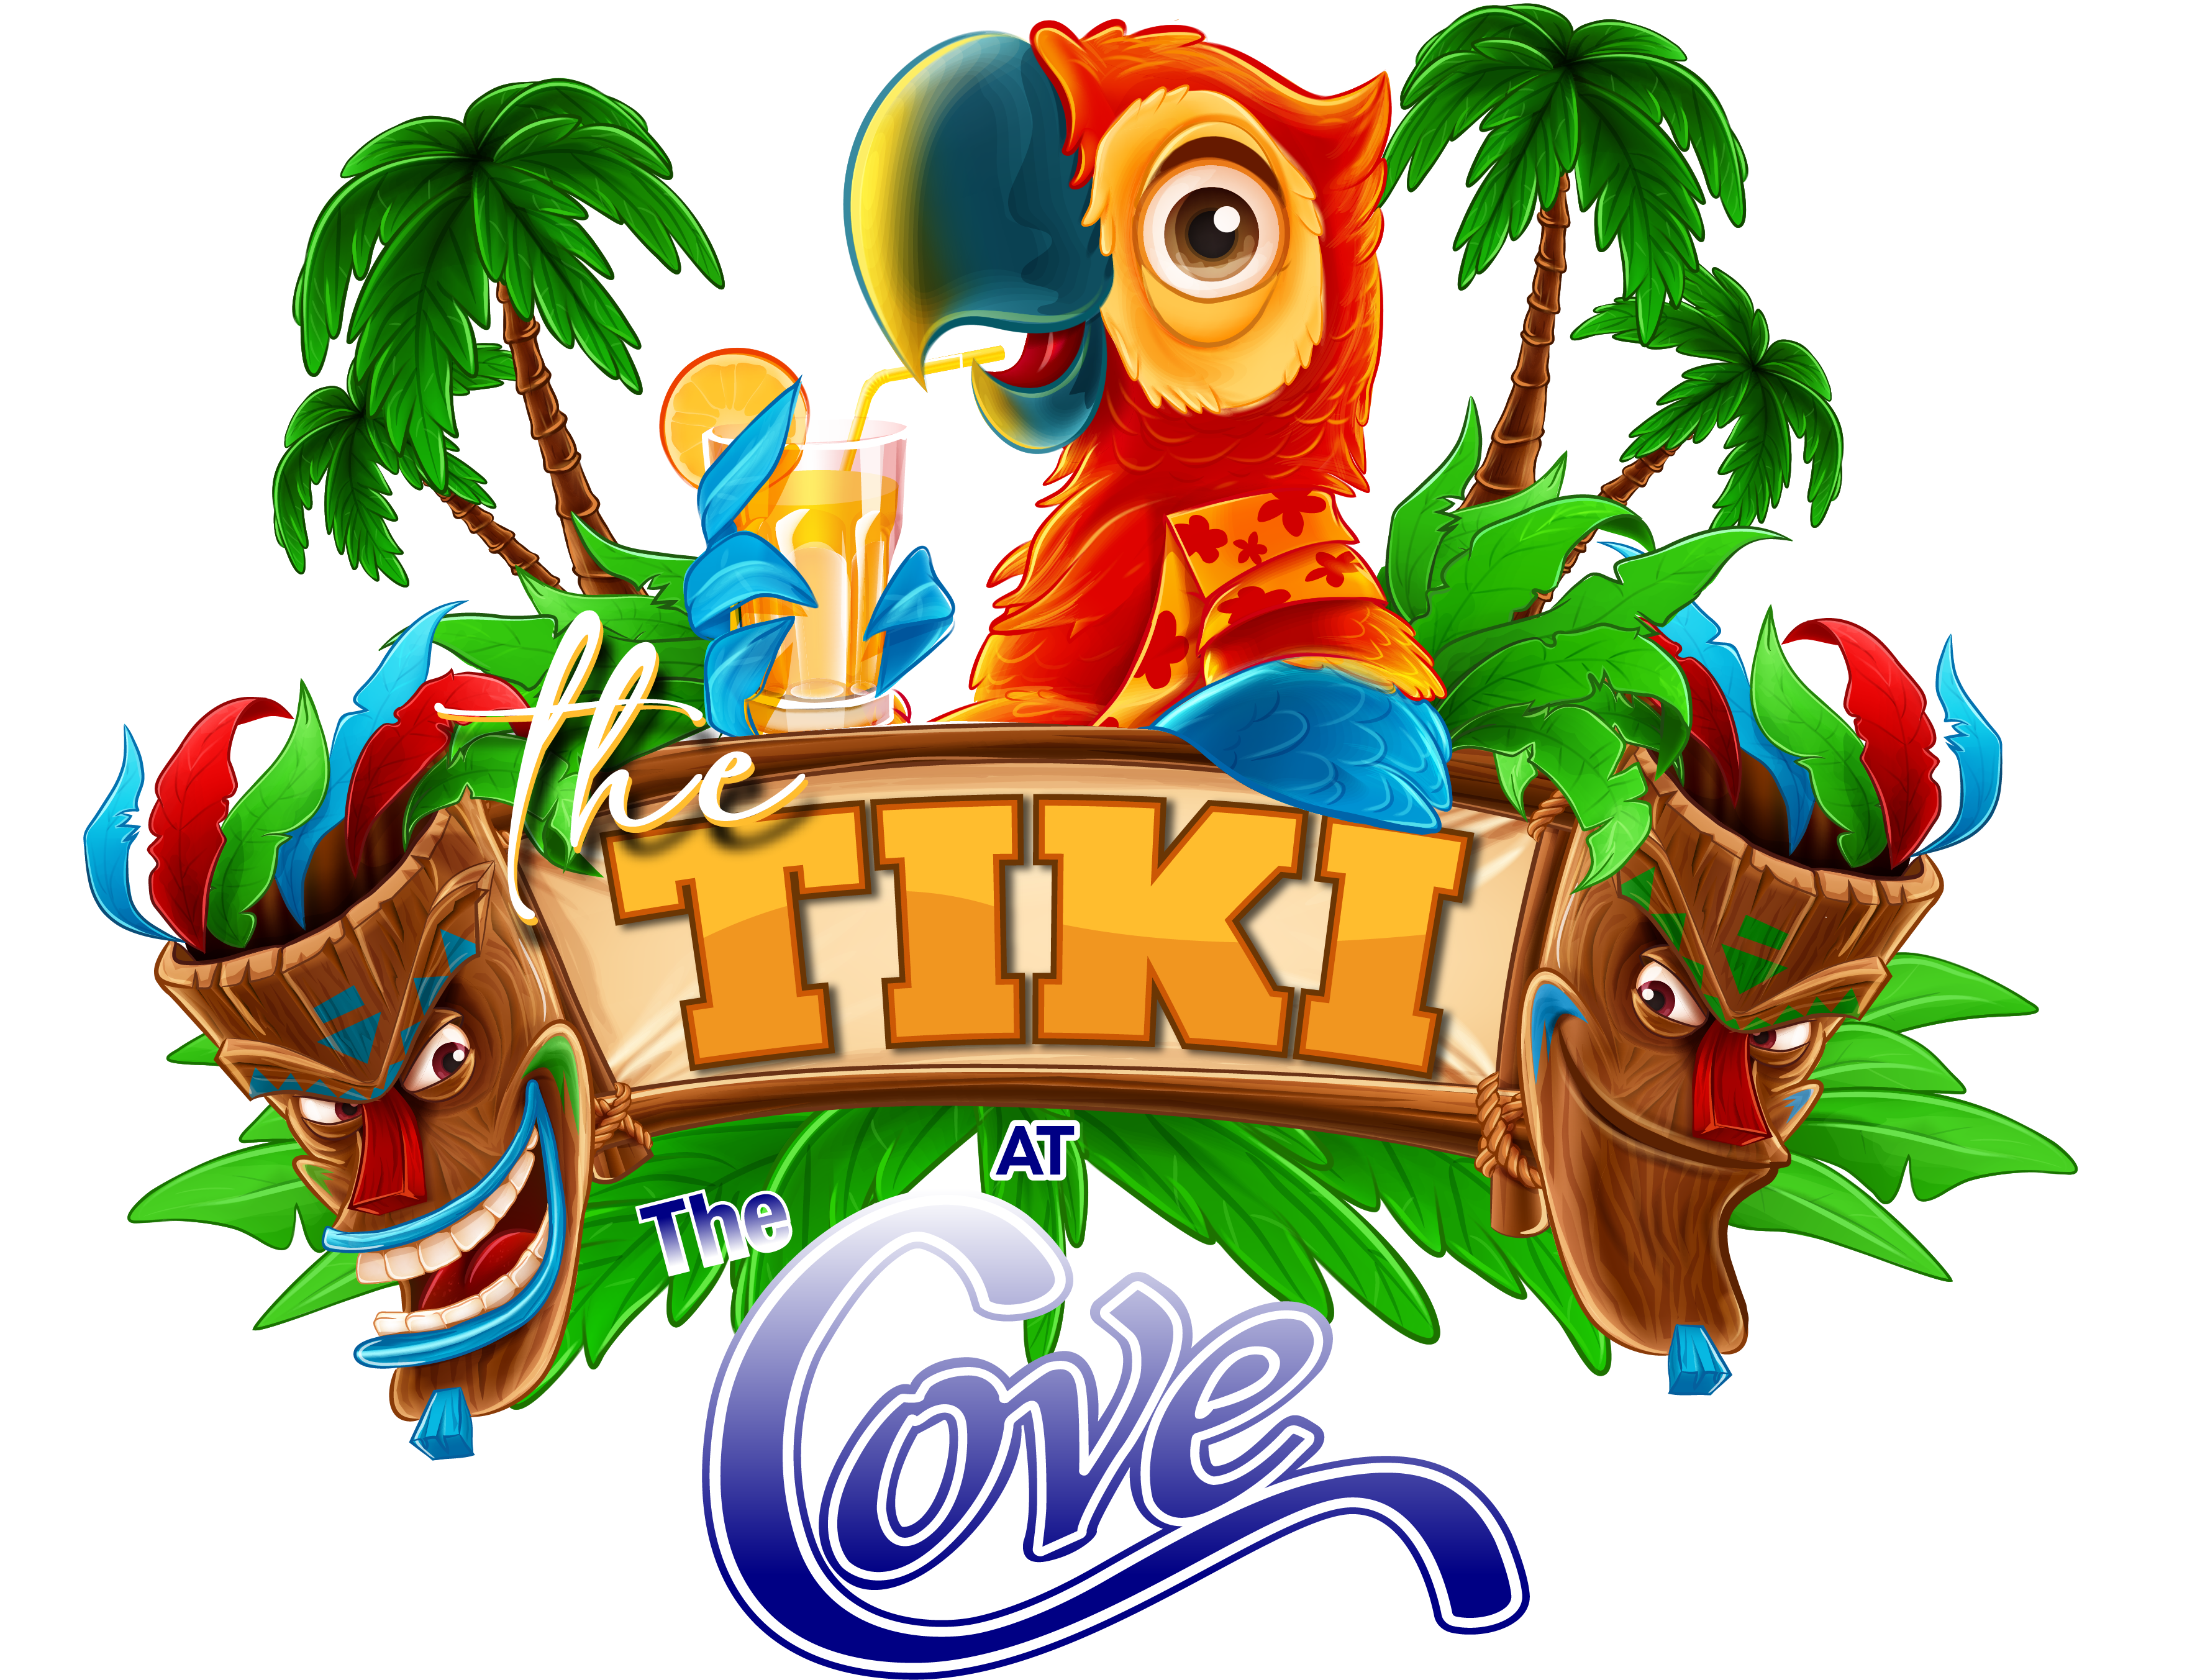 The Tiki